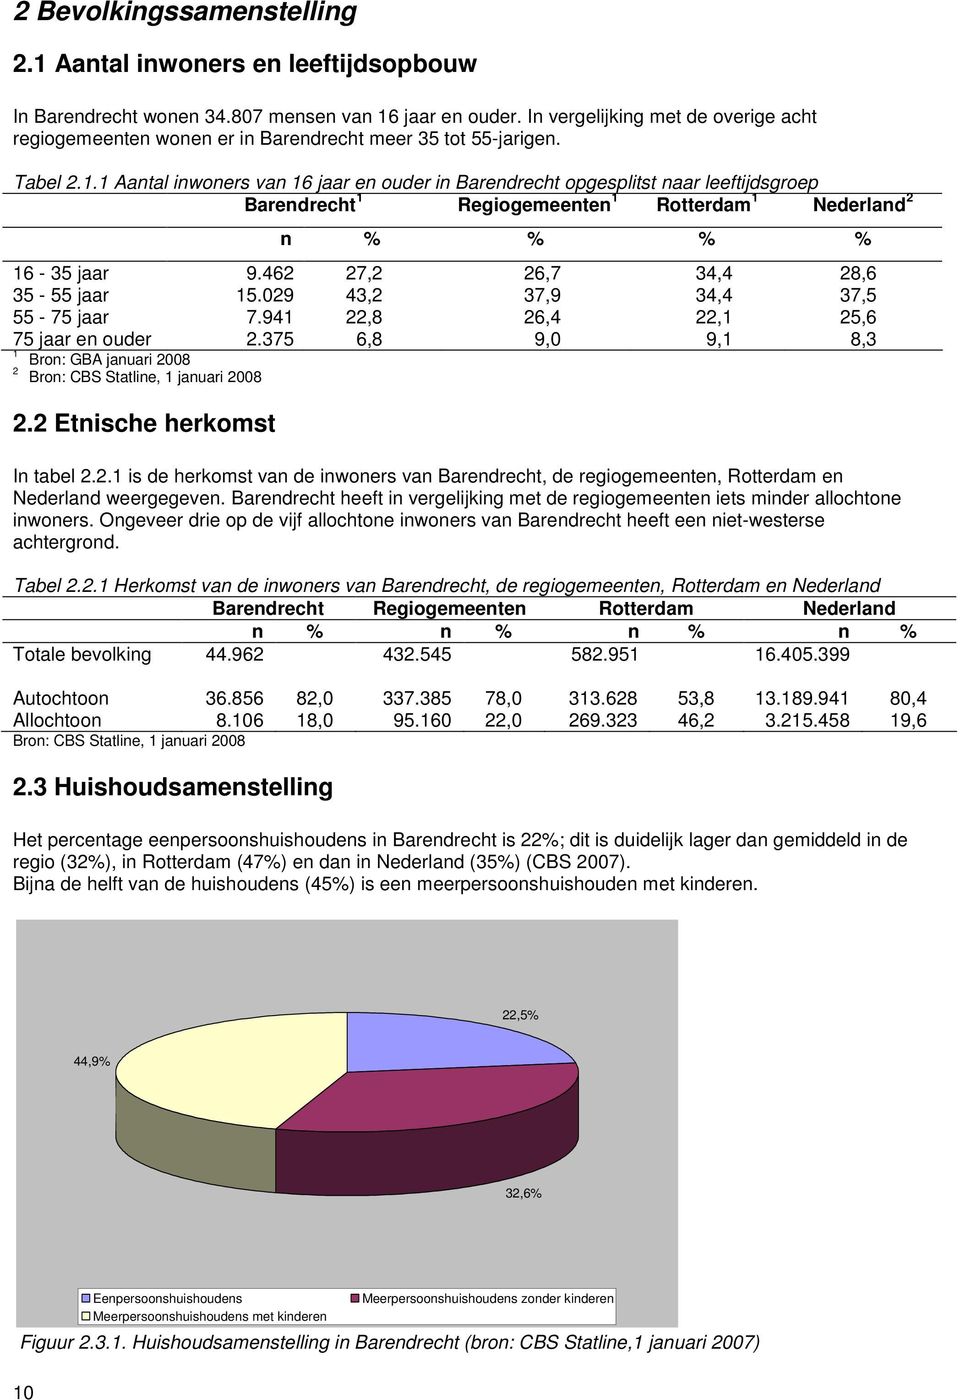 . Aantal inwoners van 6 jaar en ouder in Barendrecht opgesplitst naar leeftijdsgroep Barendrecht Rotterdam Nederland n % % % % 6-5 jaar 9.46 7, 6,7 4,4 8,6 5-55 jaar 5.09 4, 7,9 4,4 7,5 55-75 jaar 7.